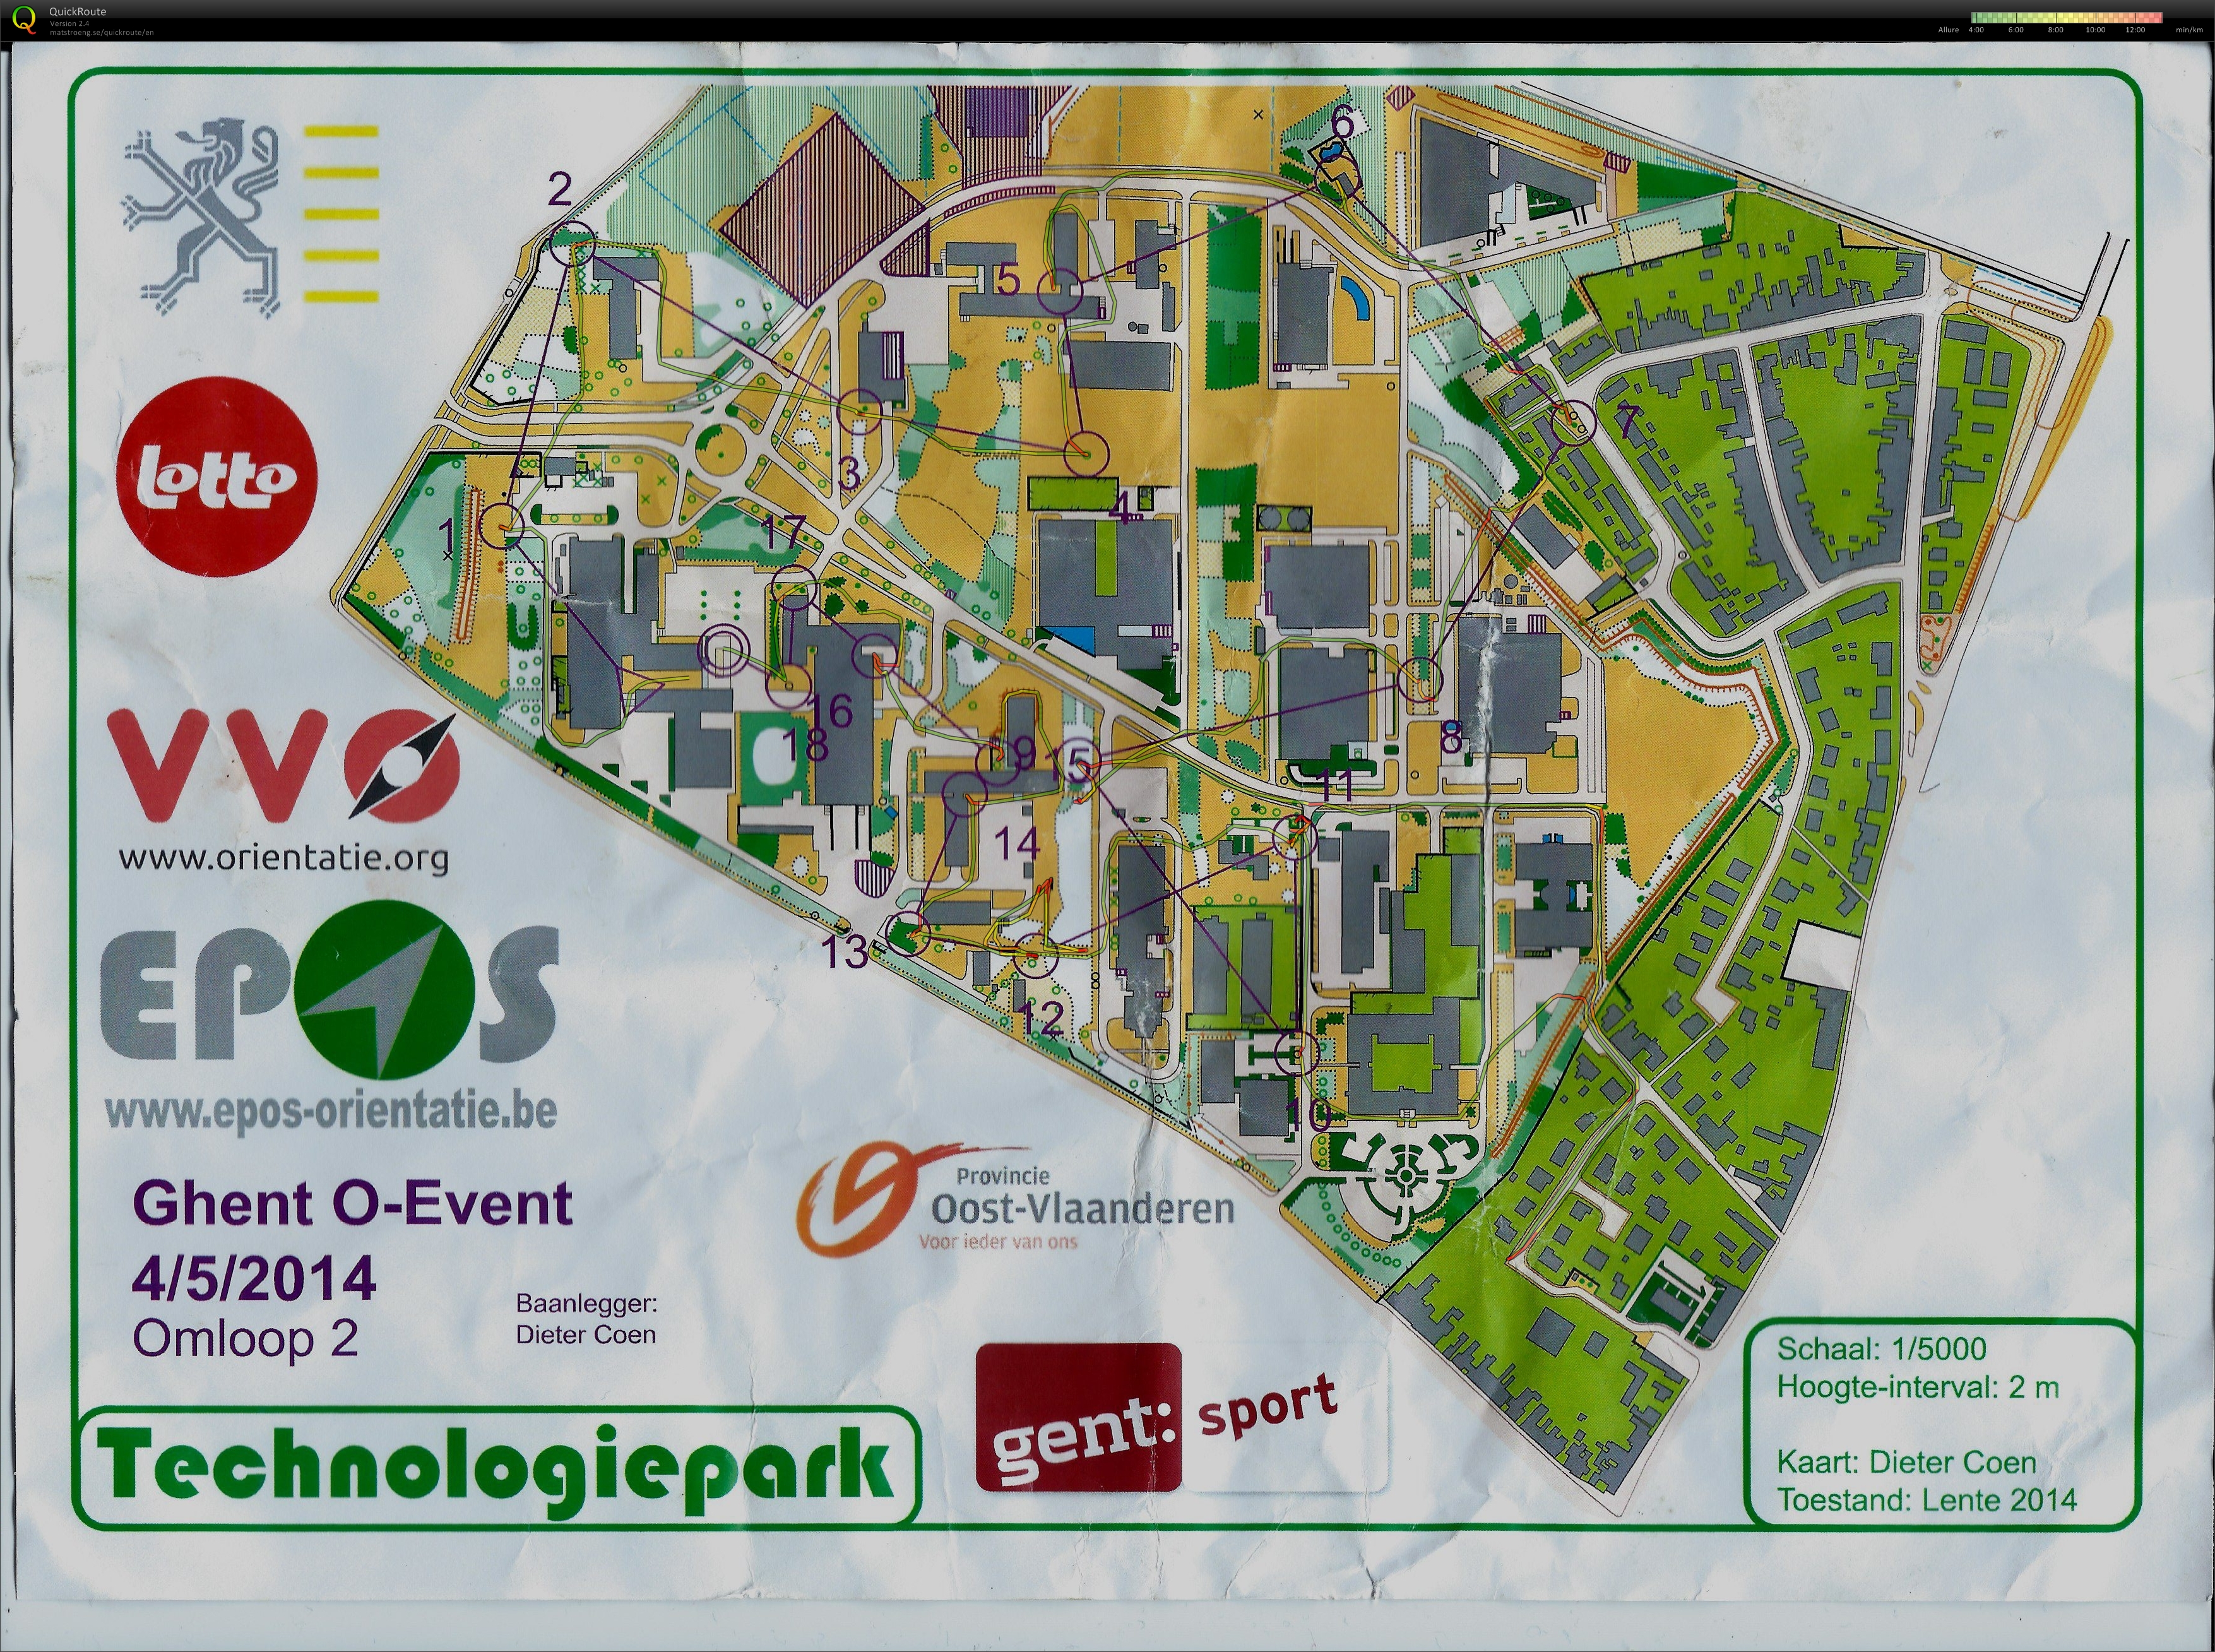 Technologiepark (2014-05-04)